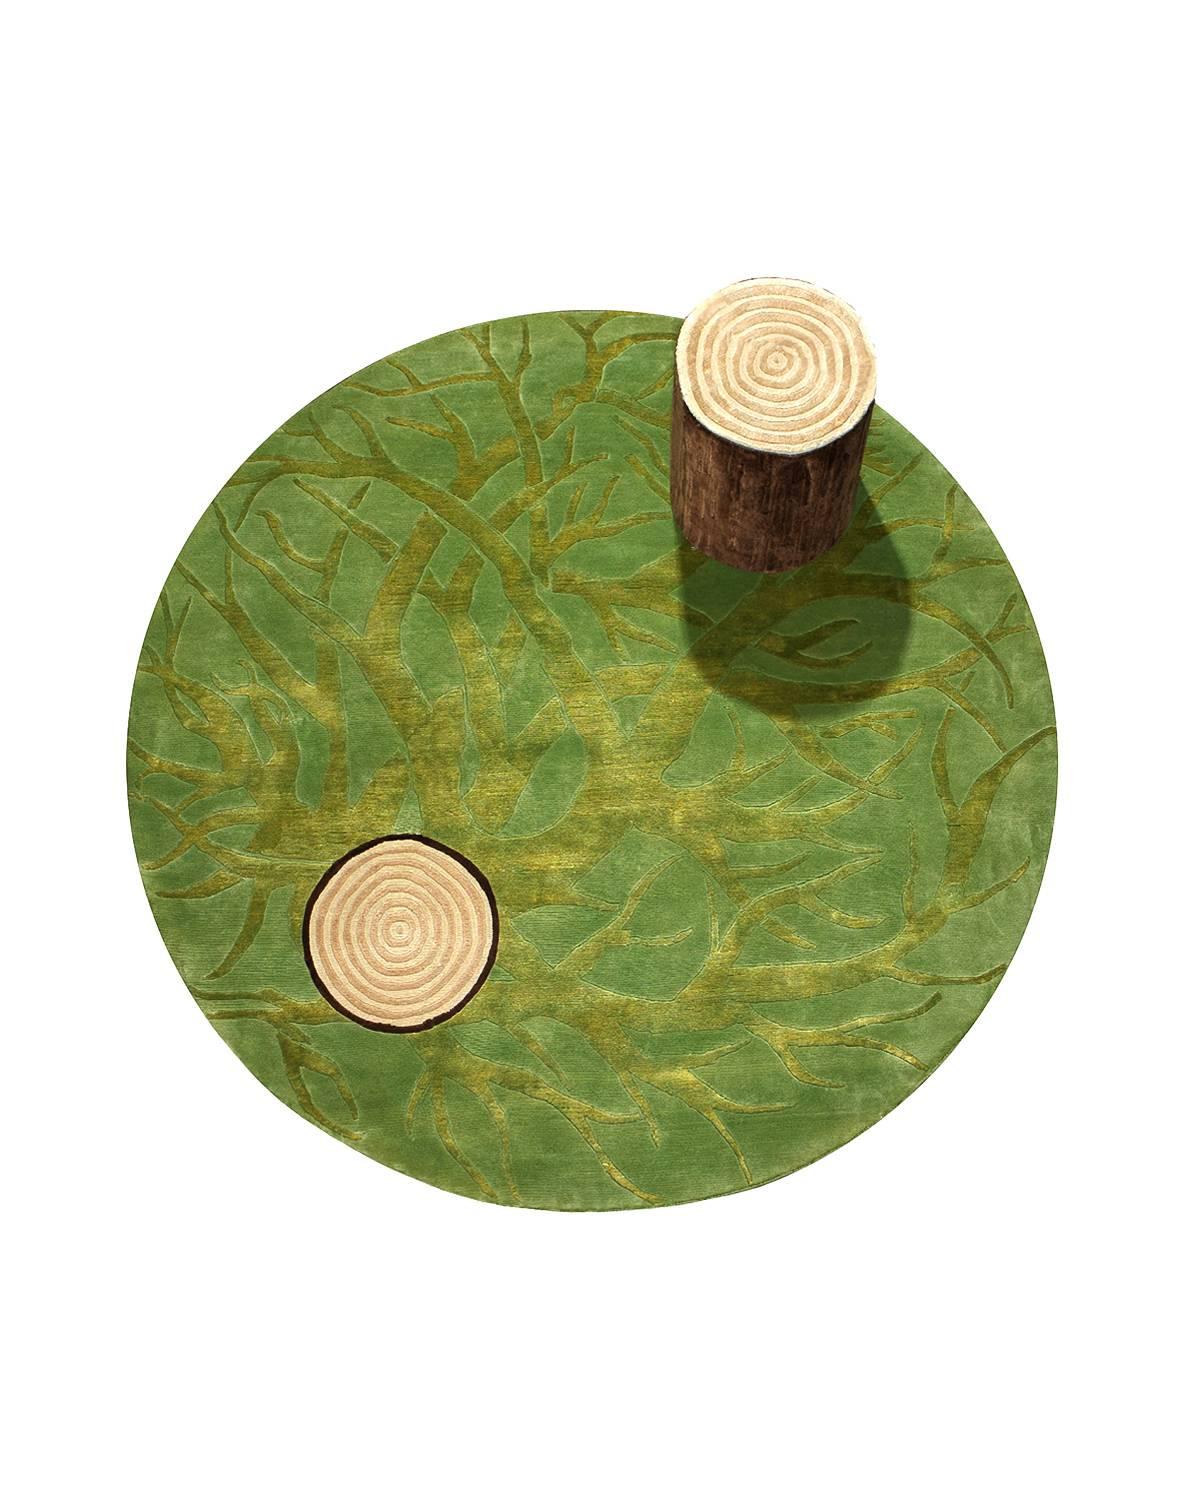 Dieser runde Teppich mit mexikanischem, zeitgenössischem Design wird von Odabashians Netzwerk von Familienwebern in der Nähe von Mirzapur, Indien, aus feinster neuseeländischer Wolle gewebt. Das Design wurde vom renommierten mexikanischen Designer